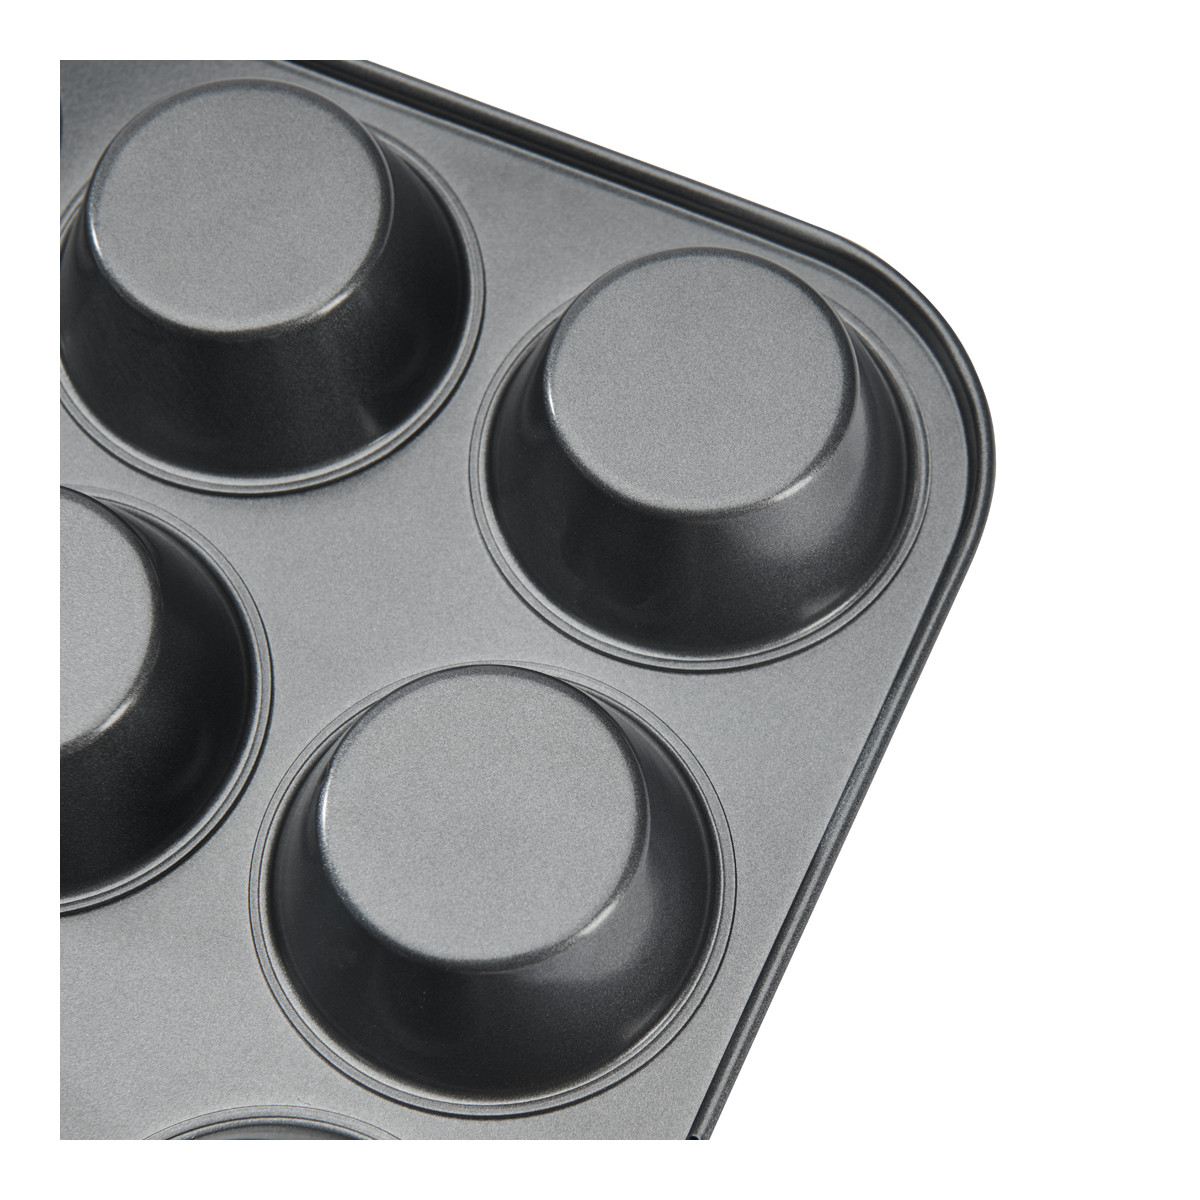 Moule silicone élastomoule - 6 muffins - 30 x 17,6 cm - De Buyer